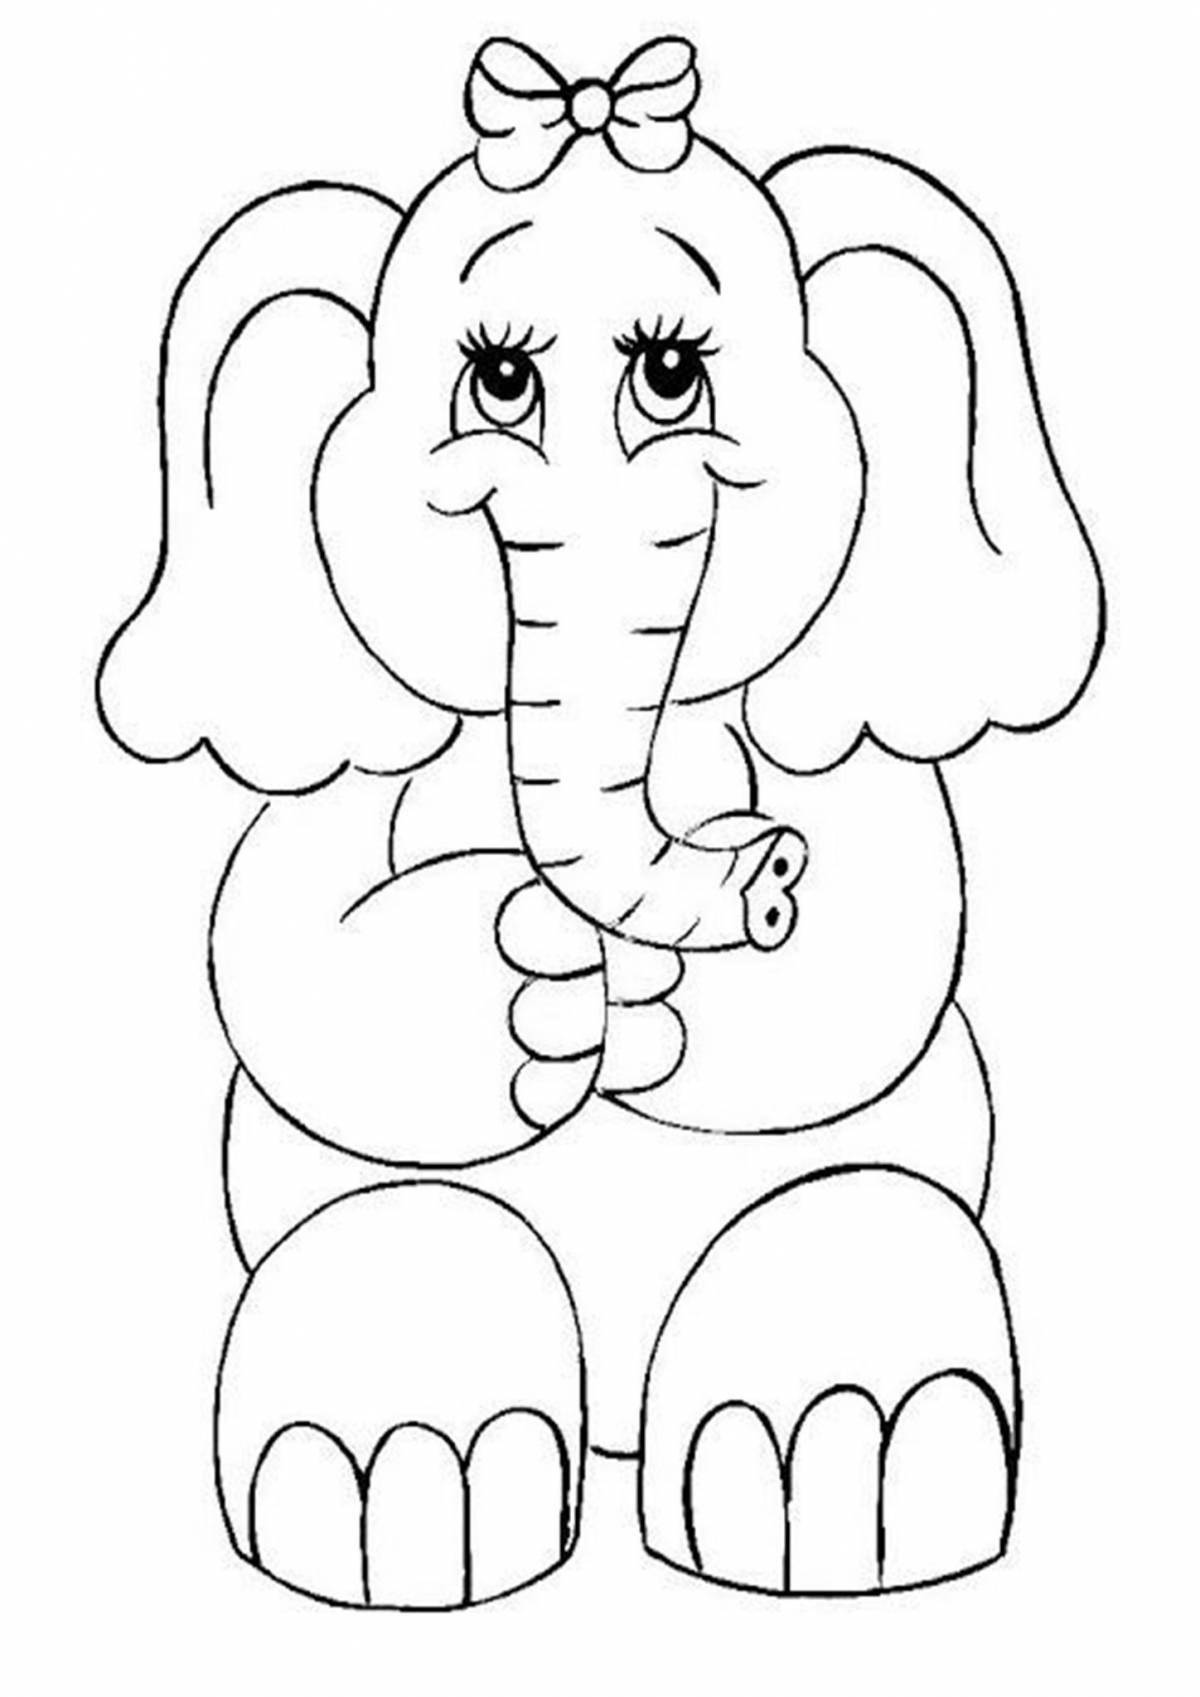 Причудливая раскраска слона для детей 3-4 лет